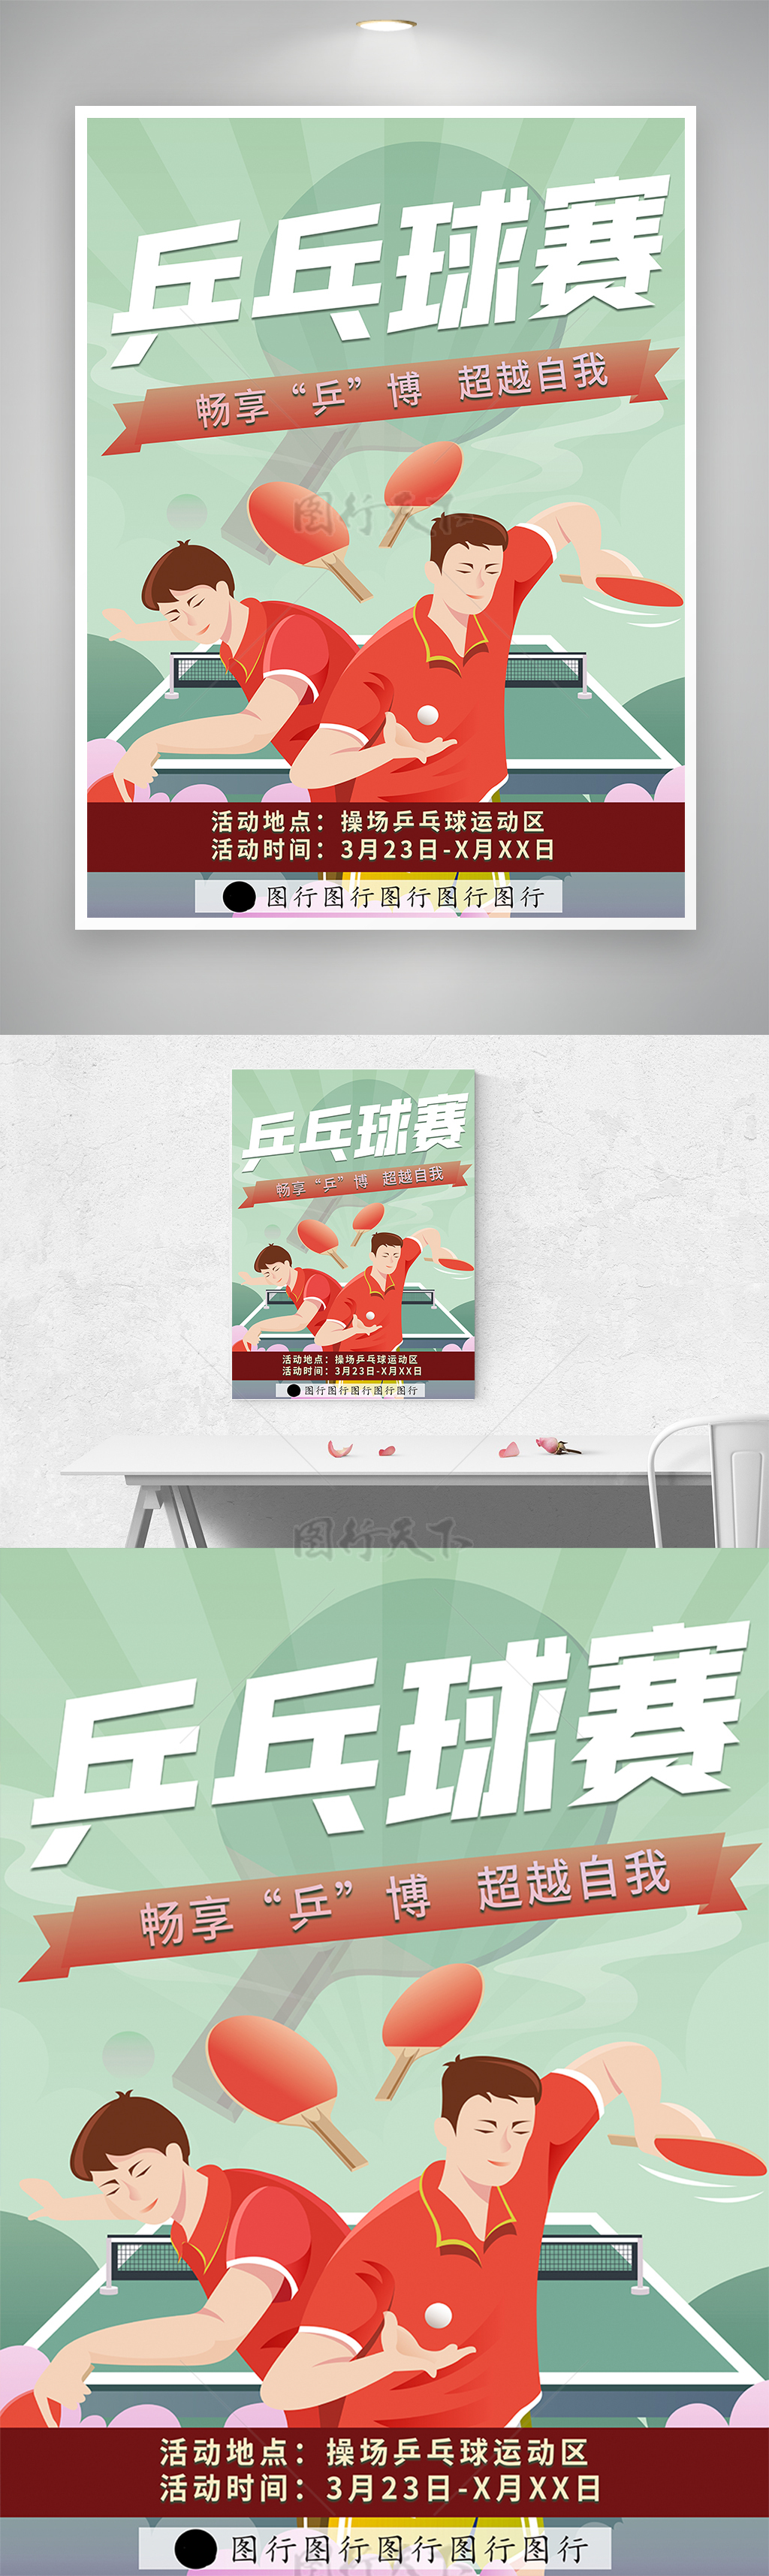 【畅想“乒”博 超越自我】校园乒乓球比赛活动宣传简约清新插画海报